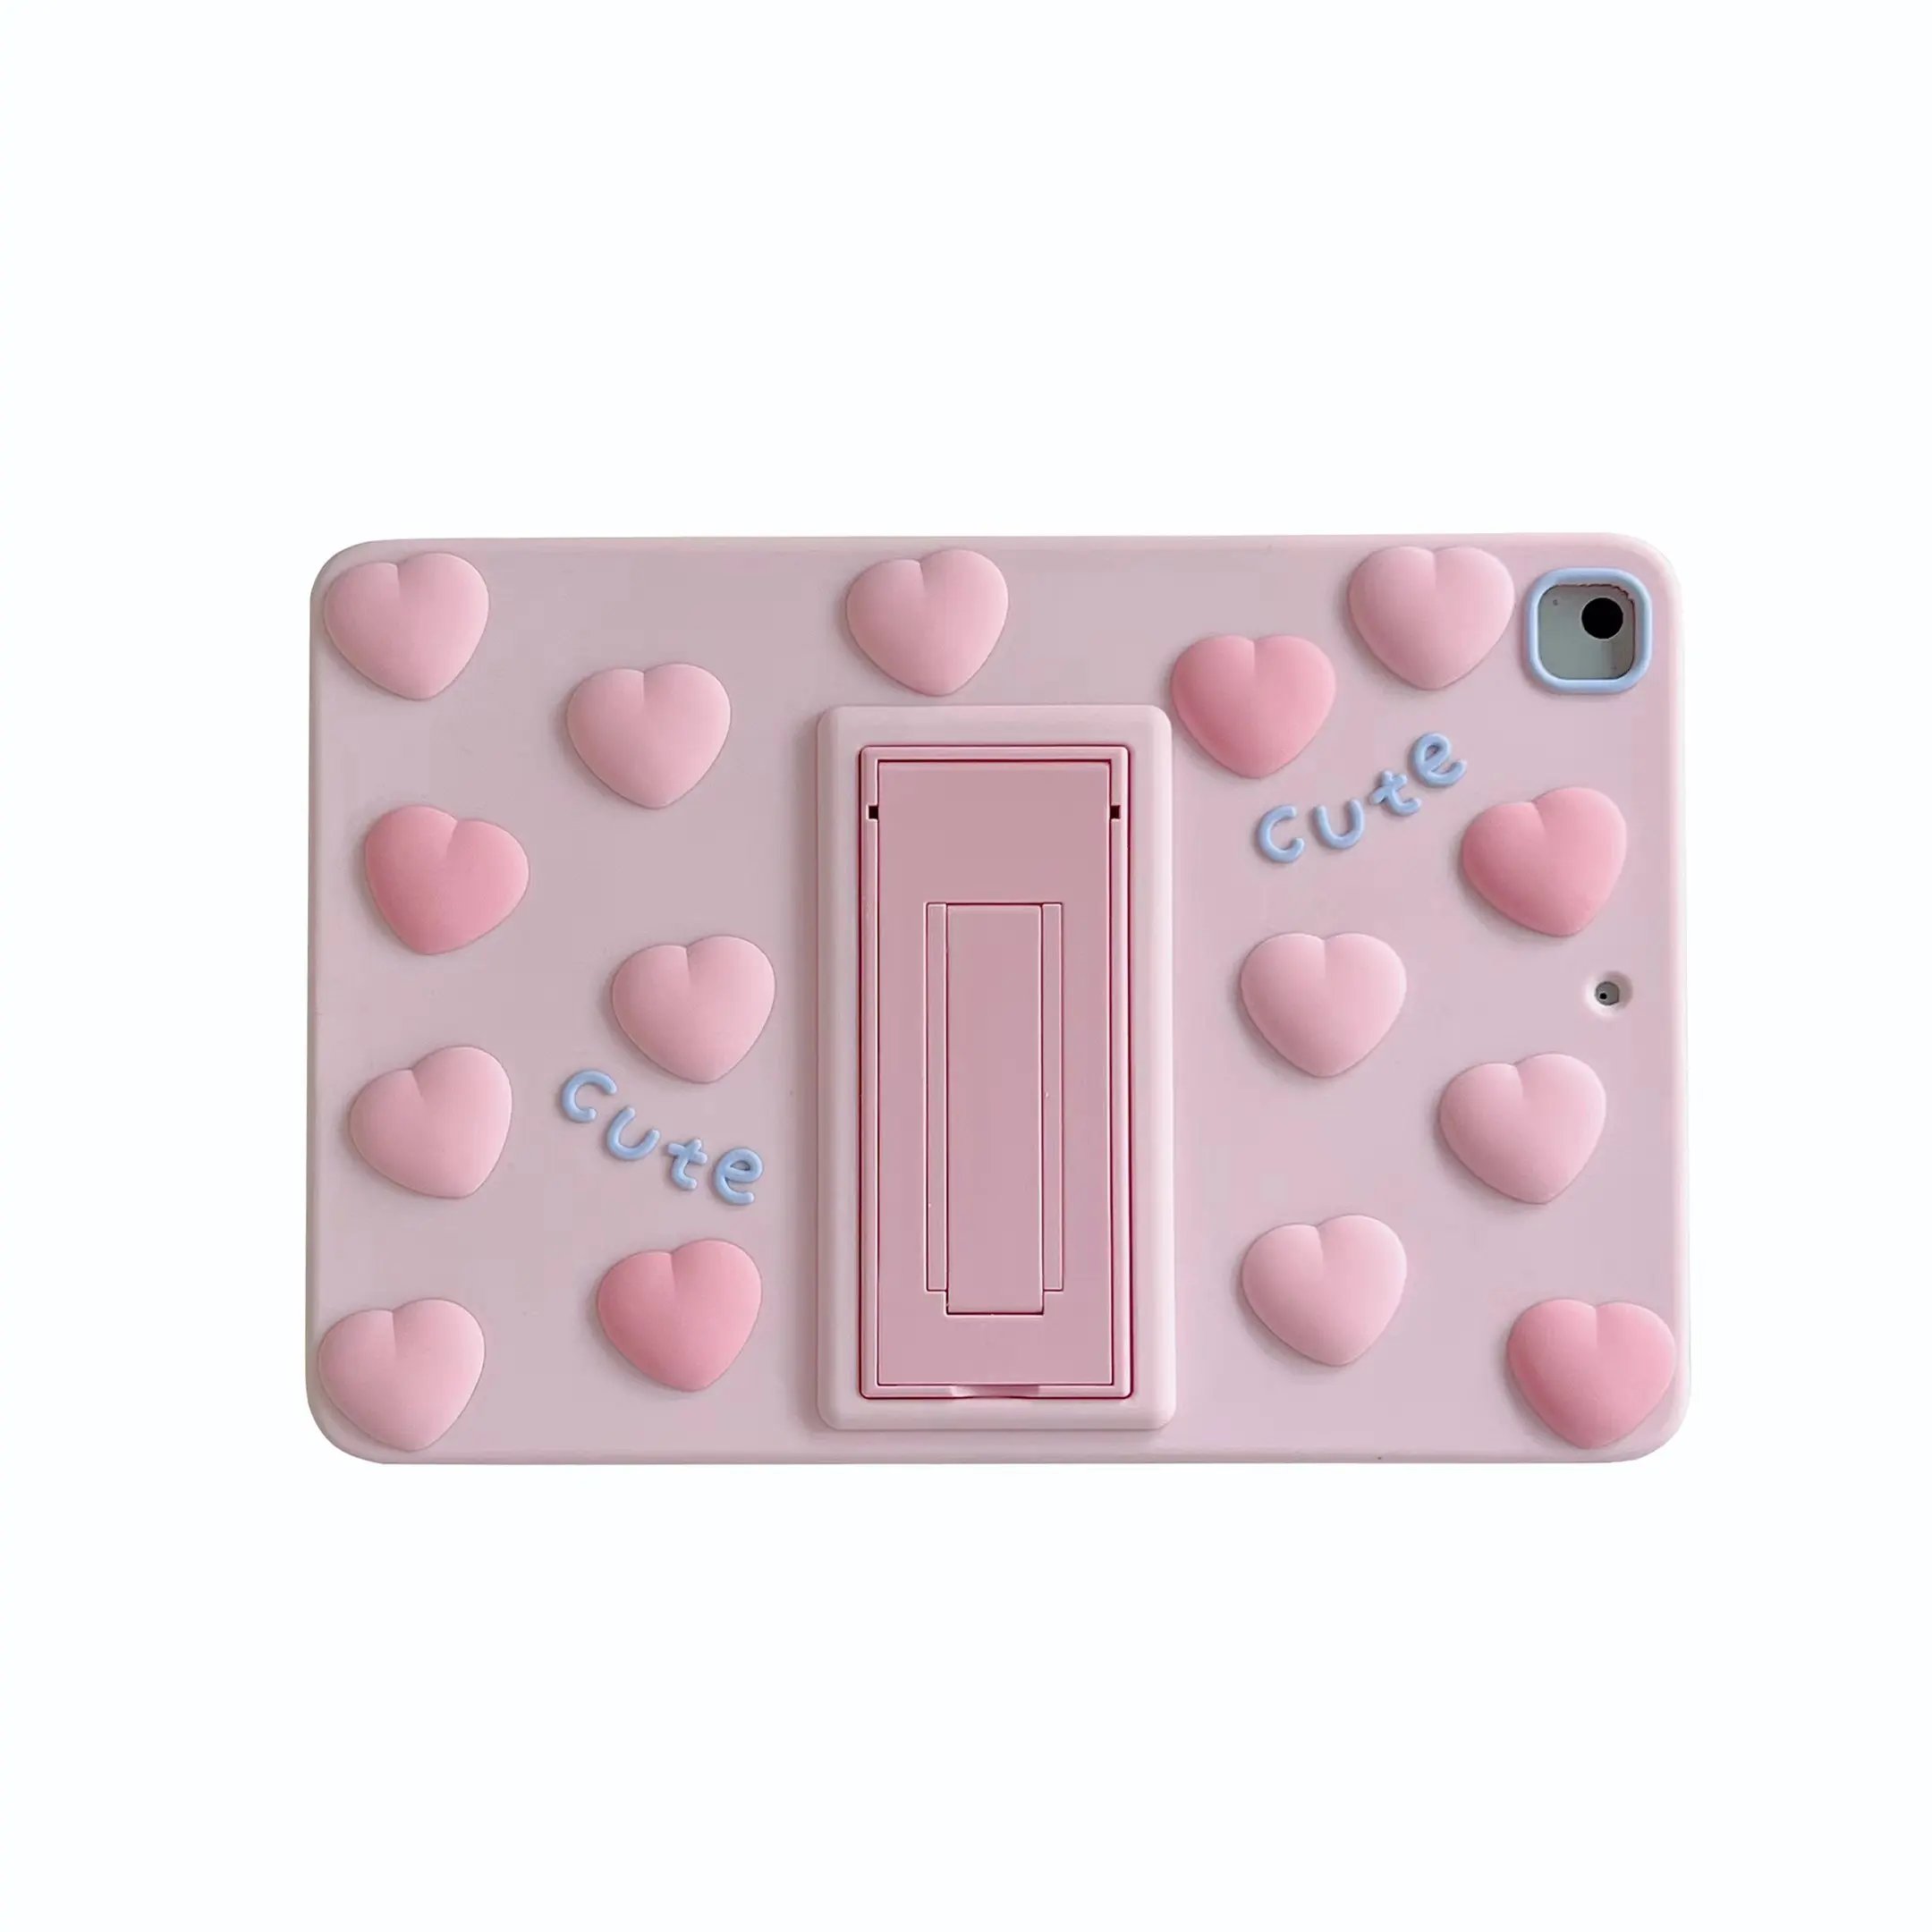 3D милый розовый «любящее сердце» подставки кронштейн для планшета чехол для iPad Mini, для детей 1, 2, 3, 4, 5, 6 лет мягкий резиновый силиконовый чехол-бампер с защитной крышкой